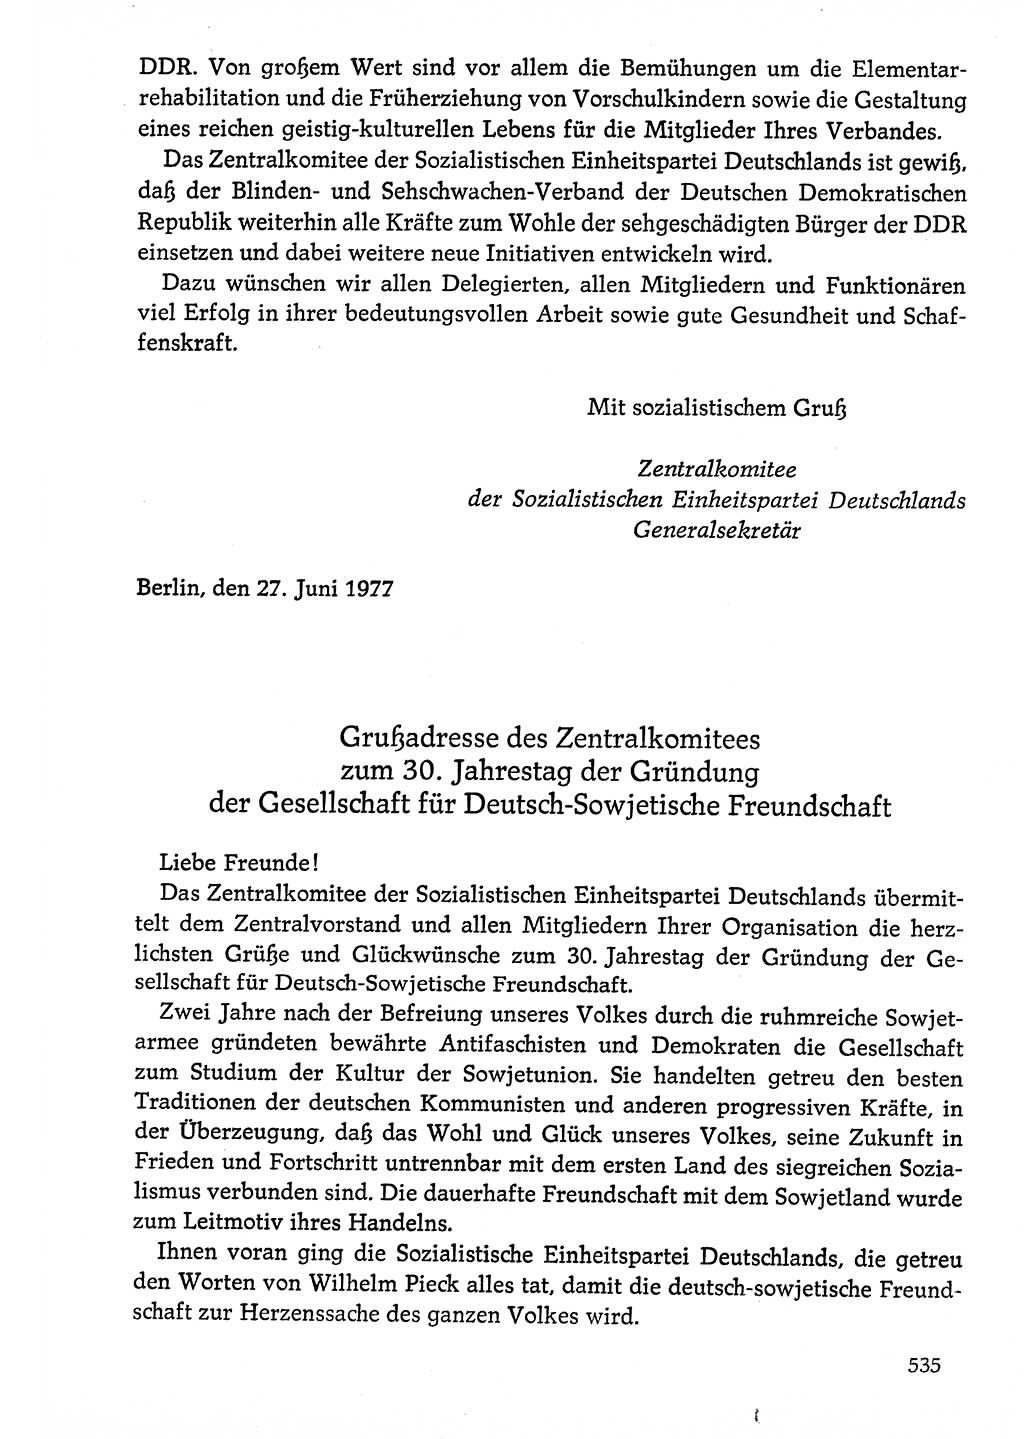 Dokumente der Sozialistischen Einheitspartei Deutschlands (SED) [Deutsche Demokratische Republik (DDR)] 1976-1977, Seite 535 (Dok. SED DDR 1976-1977, S. 535)